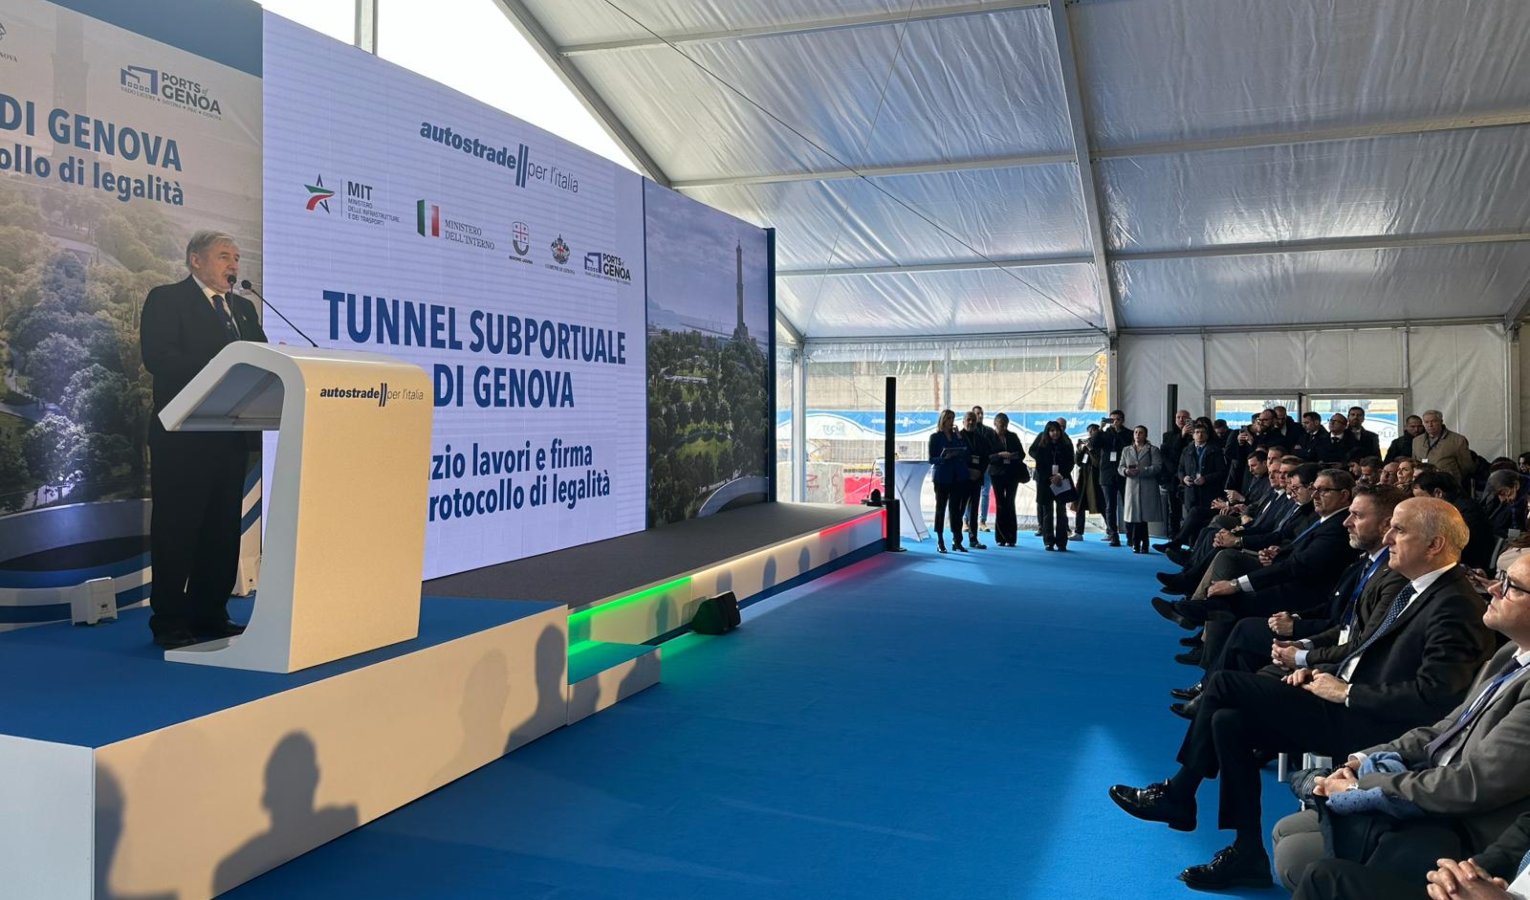 Tunnel subportuale di Genova, via al cantiere: ruspe al lavoro